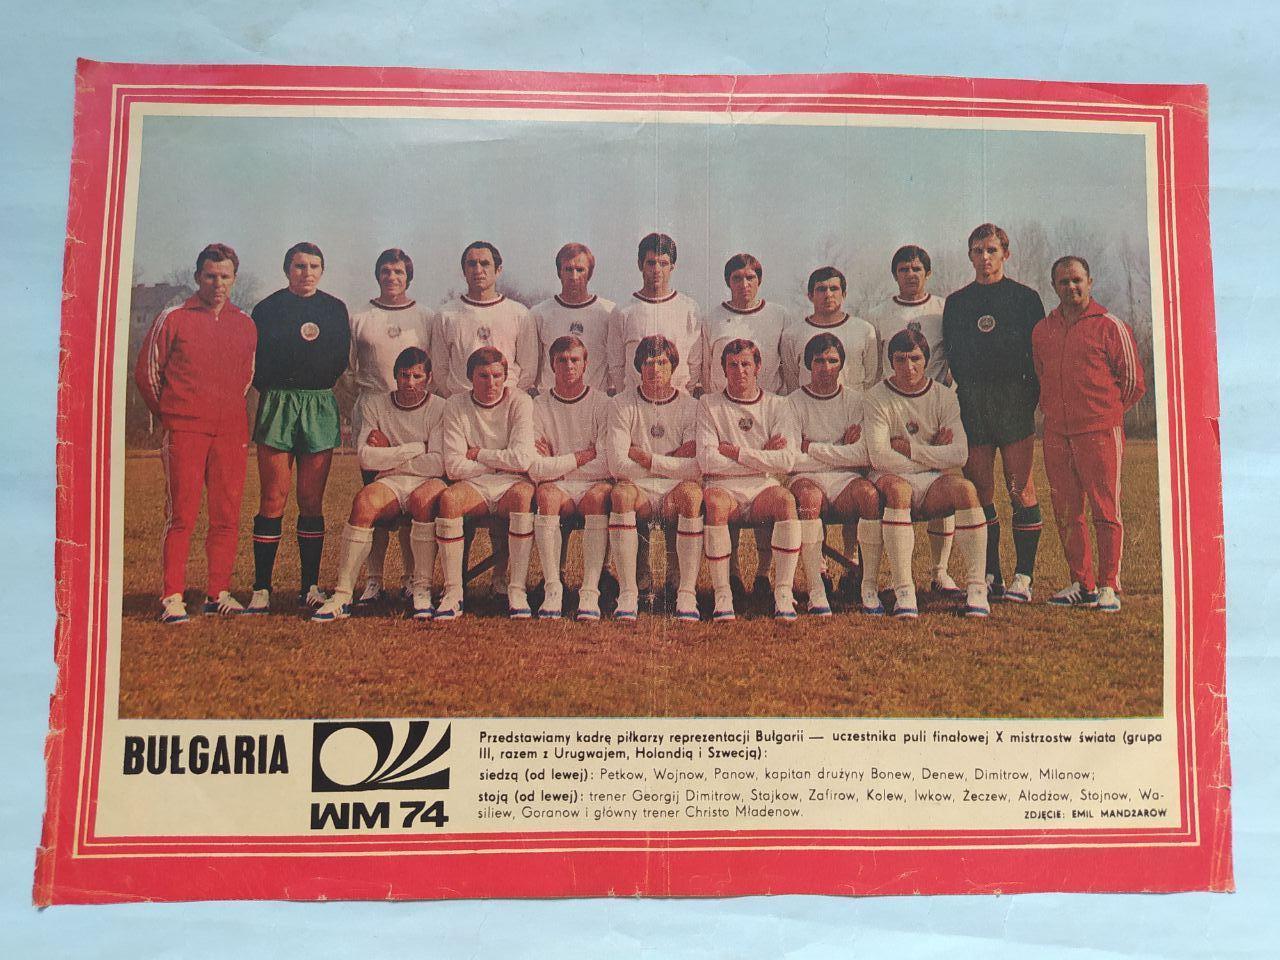 Из журнала Панорама Польша футбольная сборная Болгарии участник чм 1974 г.